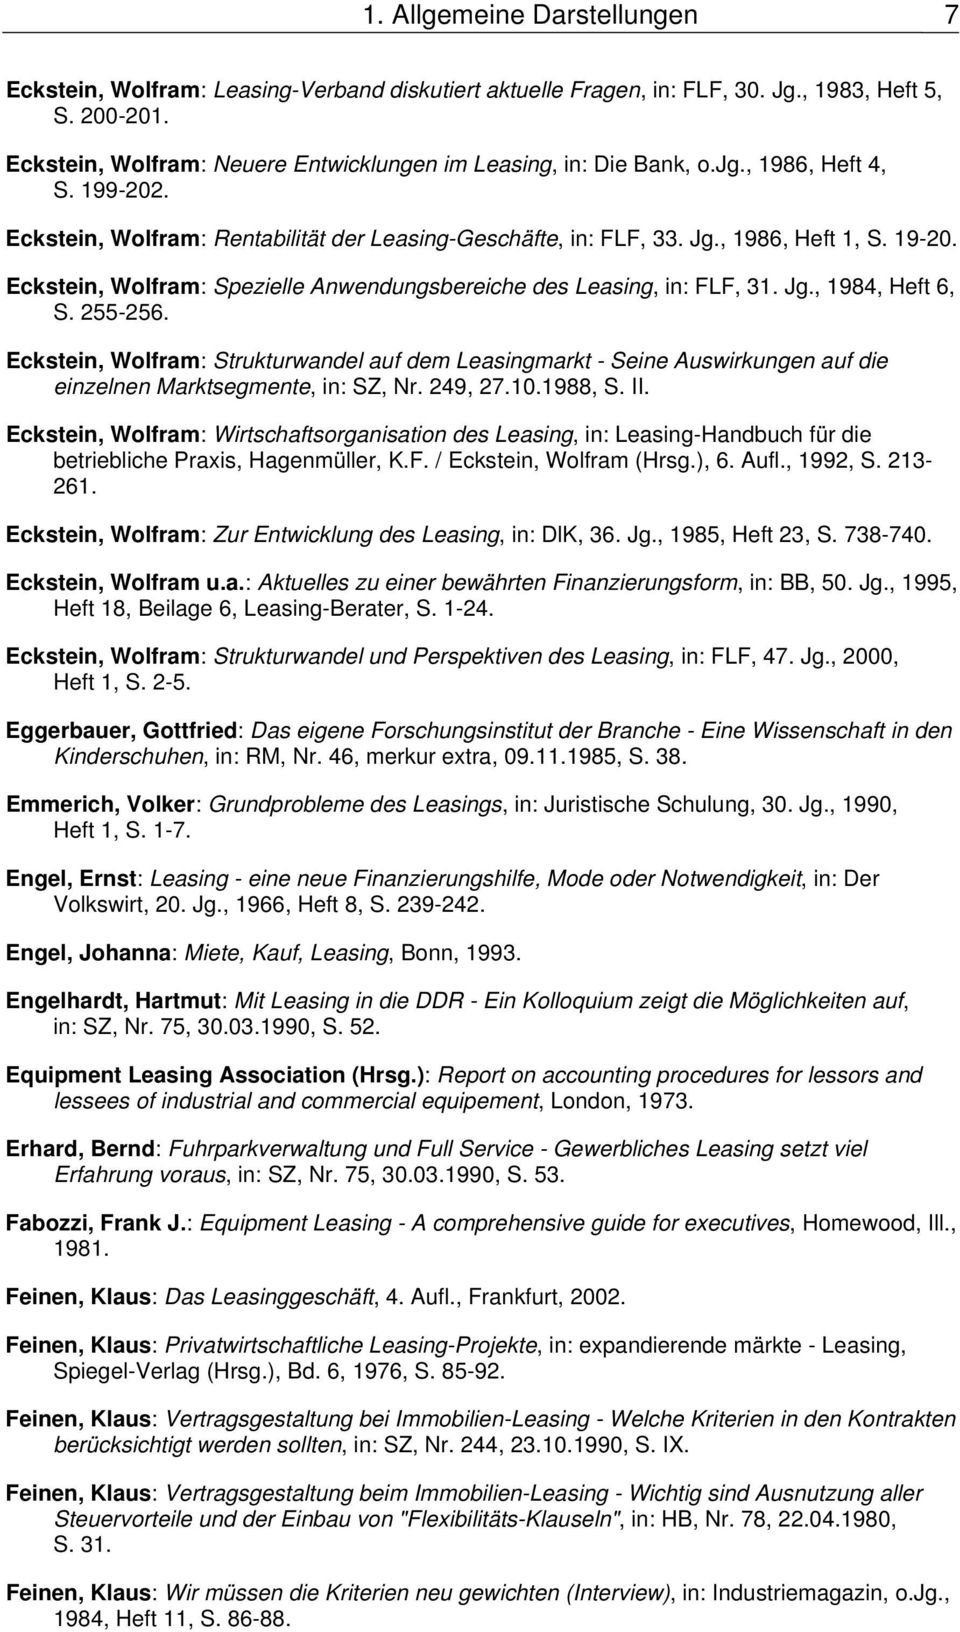 Eckstein, Wolfram: Spezielle Anwendungsbereiche des Leasing, in: FLF, 31. Jg., 1984, Heft 6, S. 255-256.